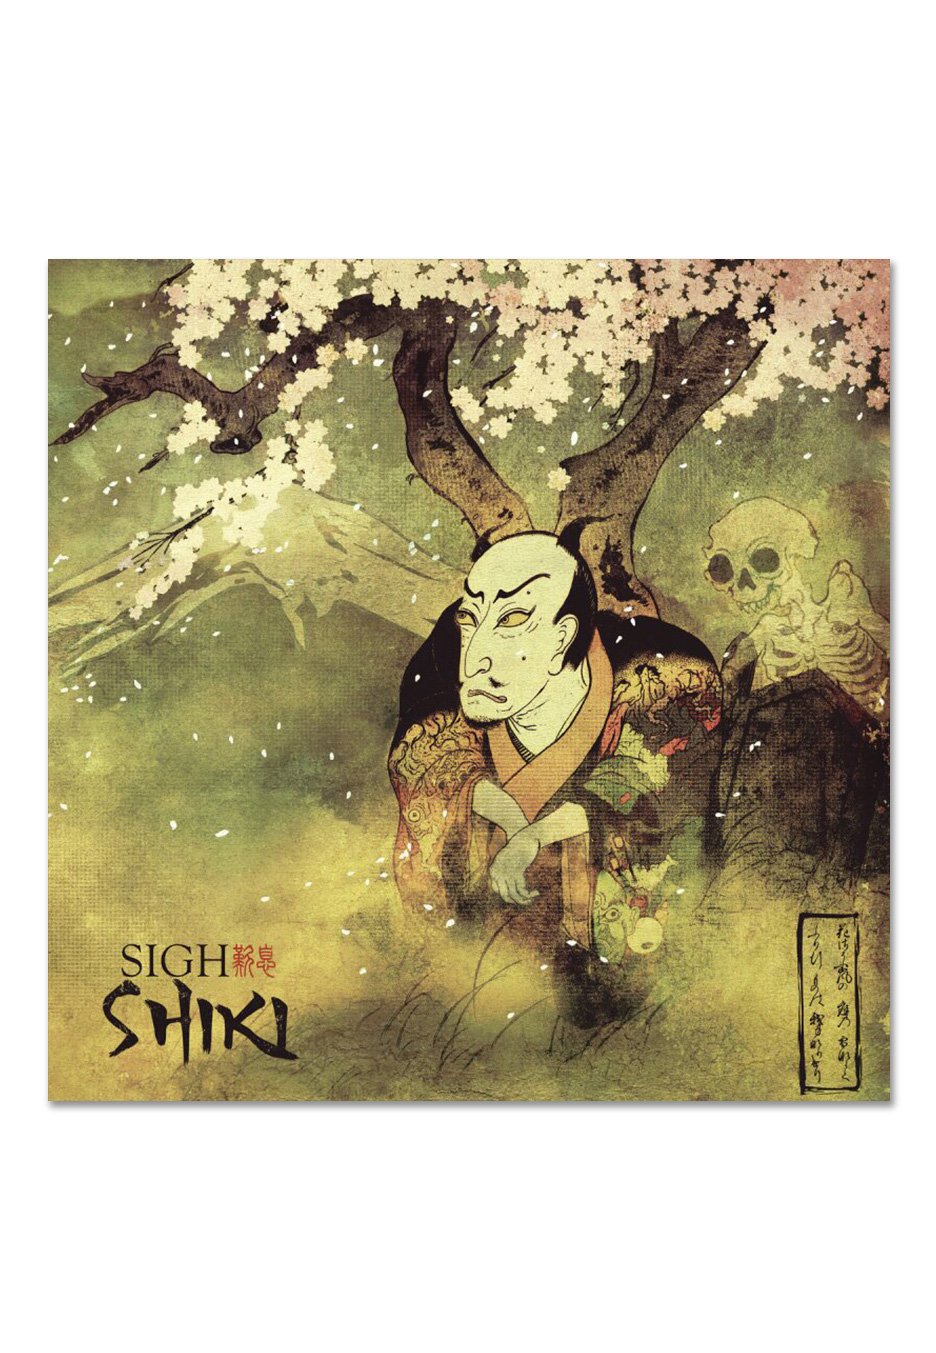 Sigh - Shiki - Vinyl